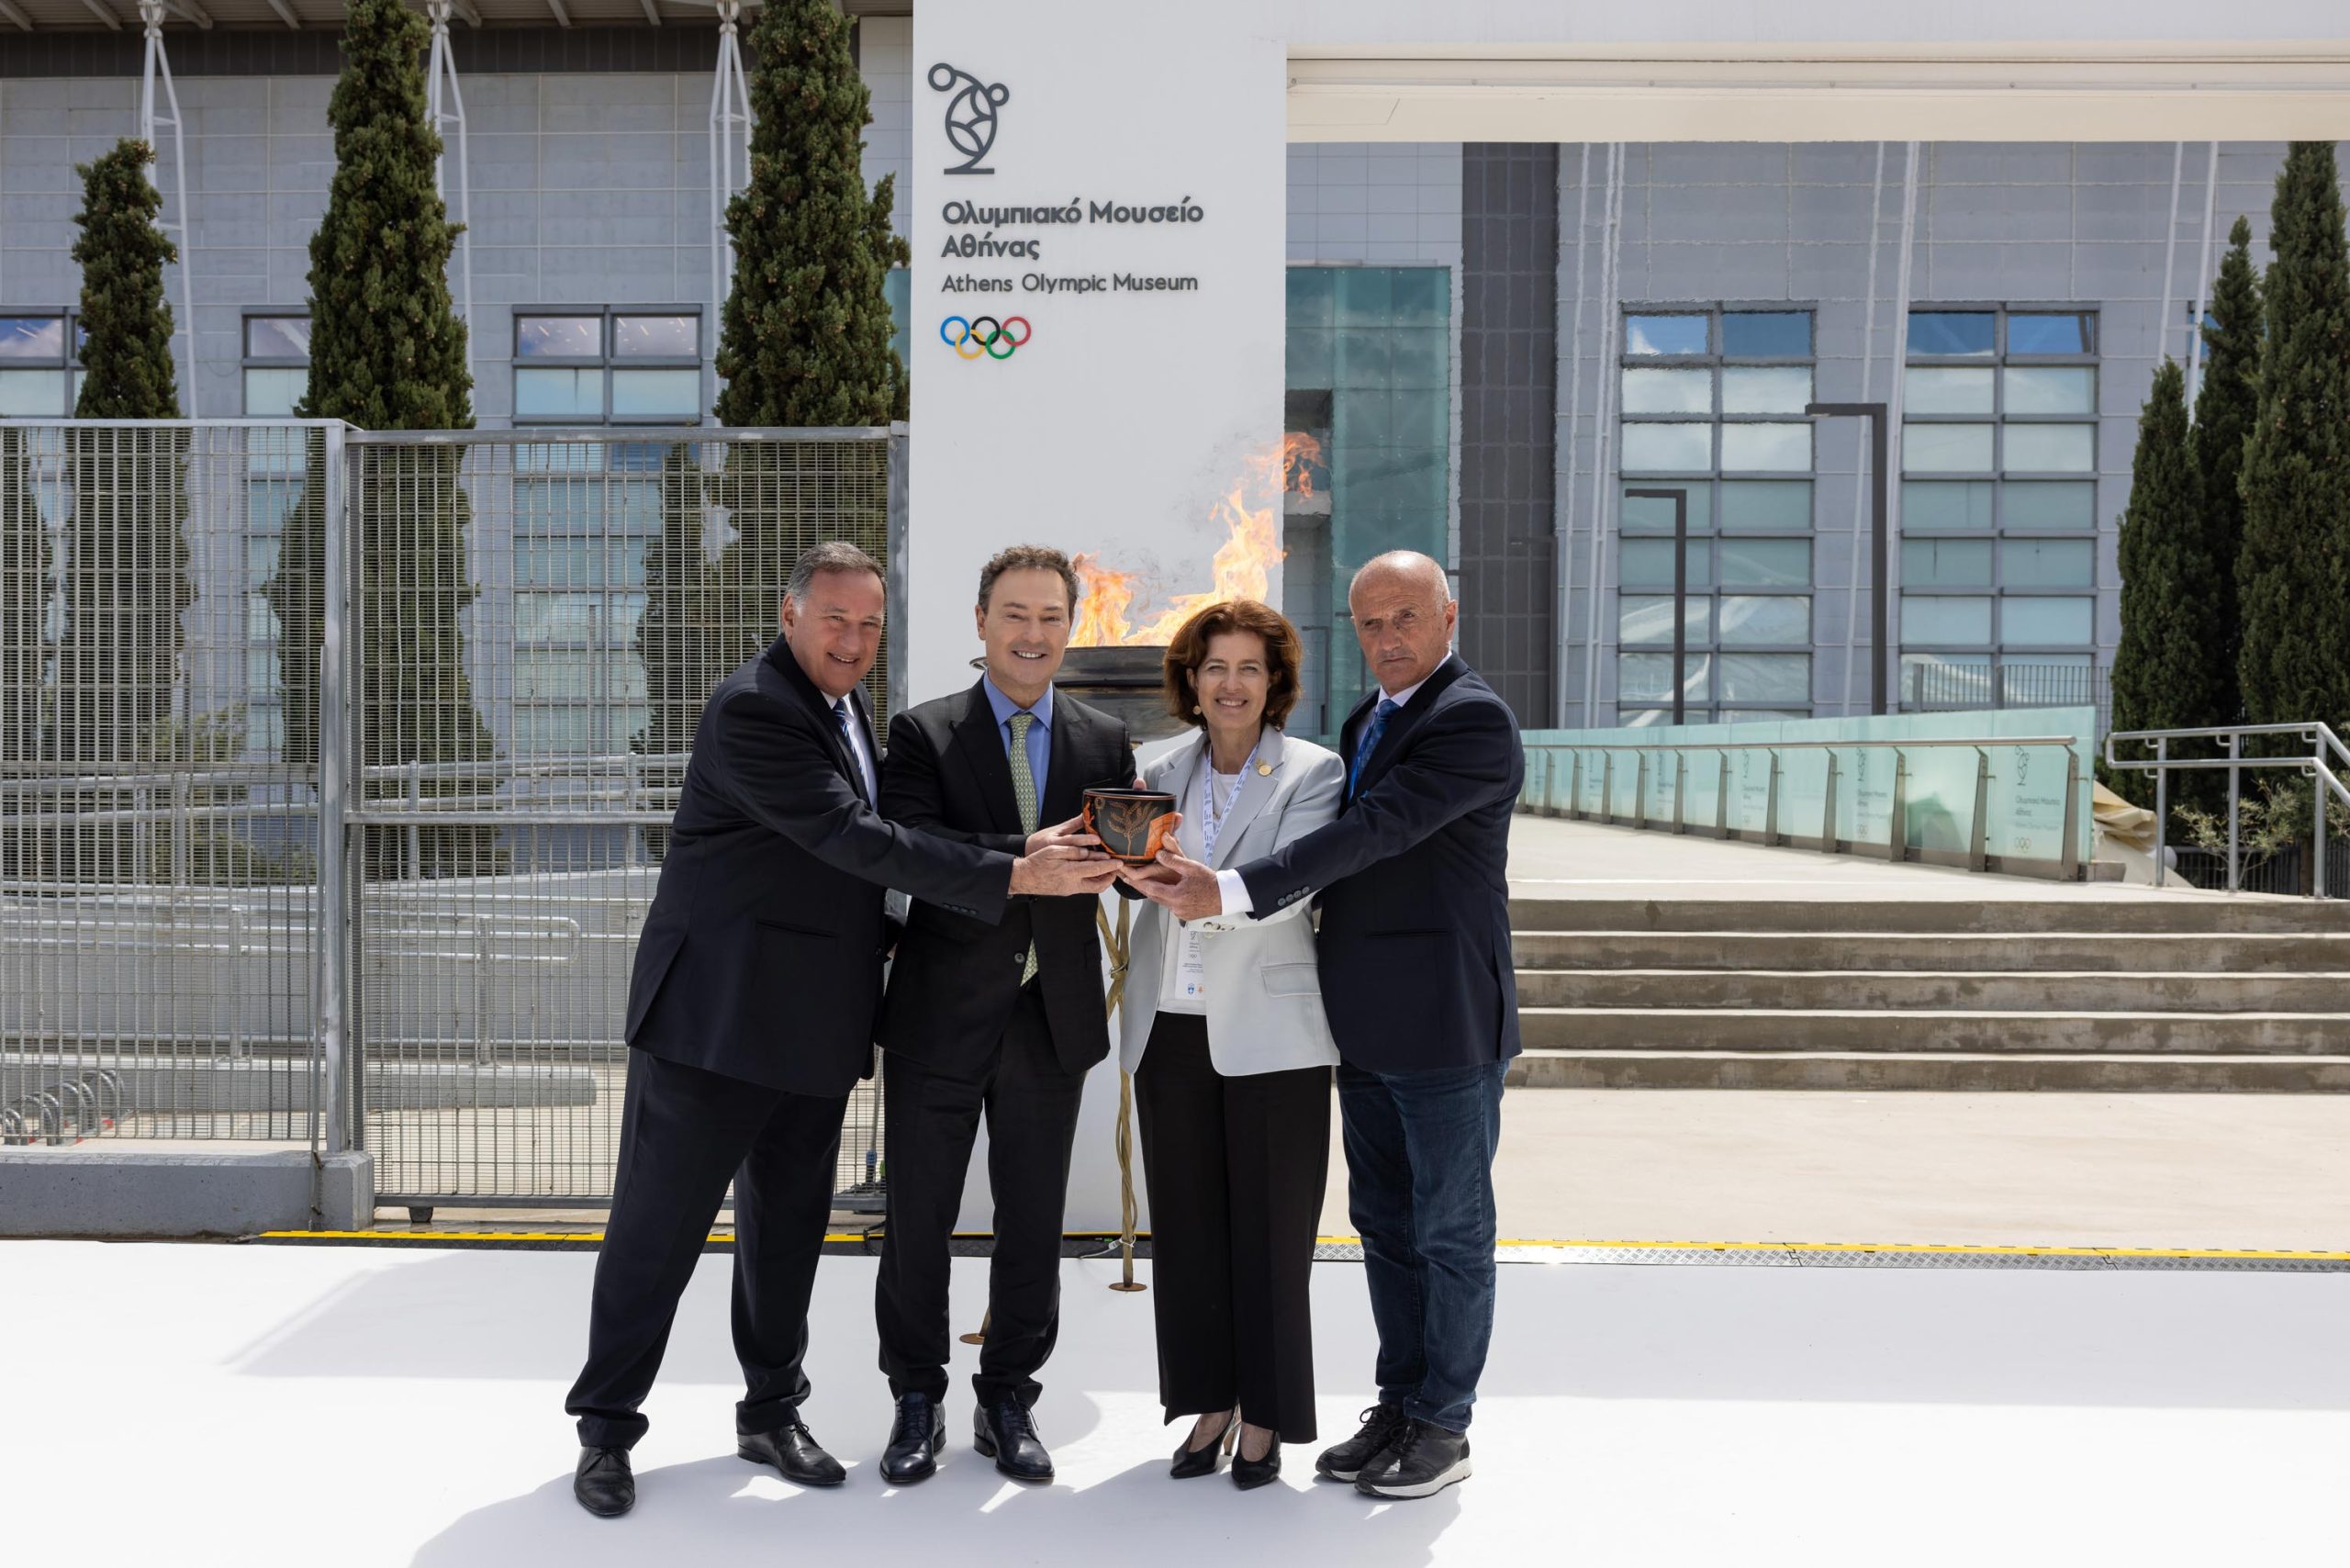 Ο CEO της Lamda Development, Οδυσσέας Αθανασίου, η Πρέσβης της Γαλλίας, Laurence Auer, o Πρόεδρος της Ελληνικής Ολυμπιακής Επιτροπής, Σπύρος Καπράλος και ο Πρόεδρος της Επιτροπής Ολυμπιακής Λαμπαδηδρομίας, Θανάσης Βασιλειάδης